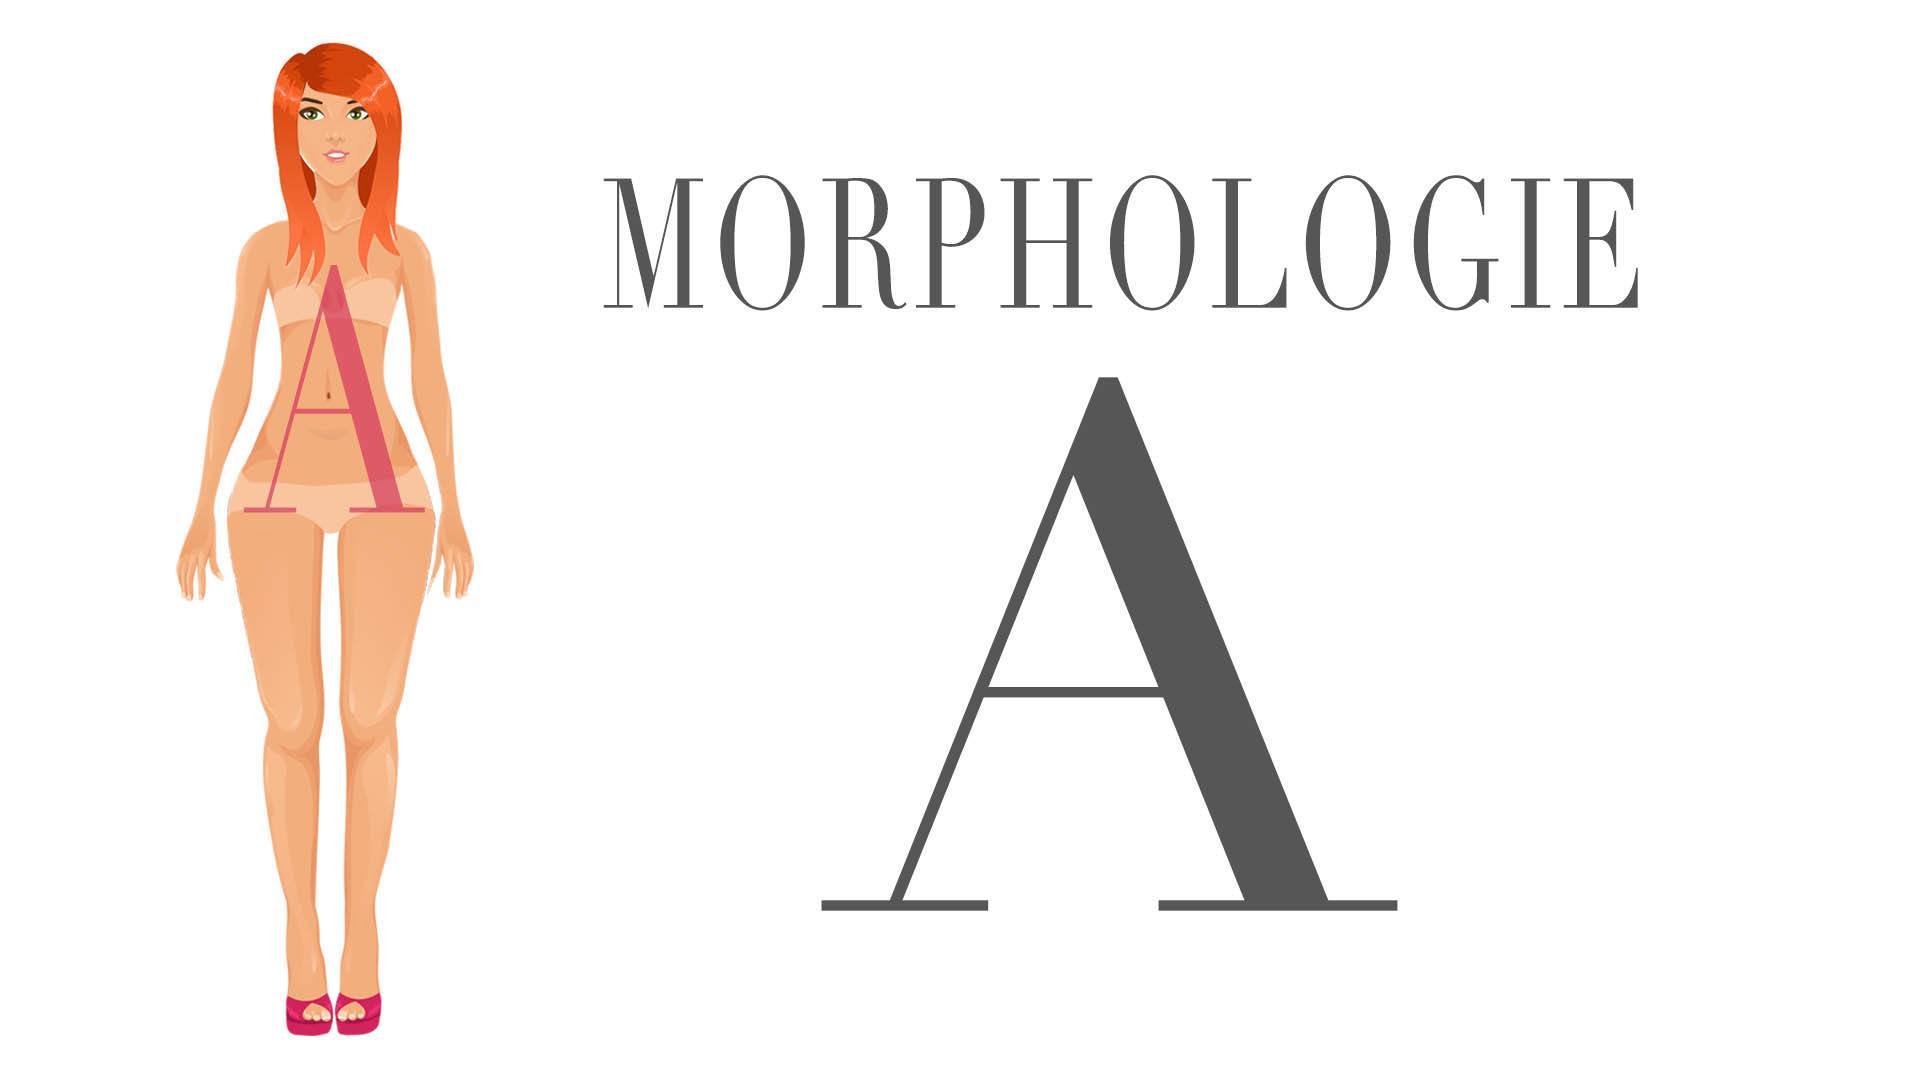 Image de la morphologie en A